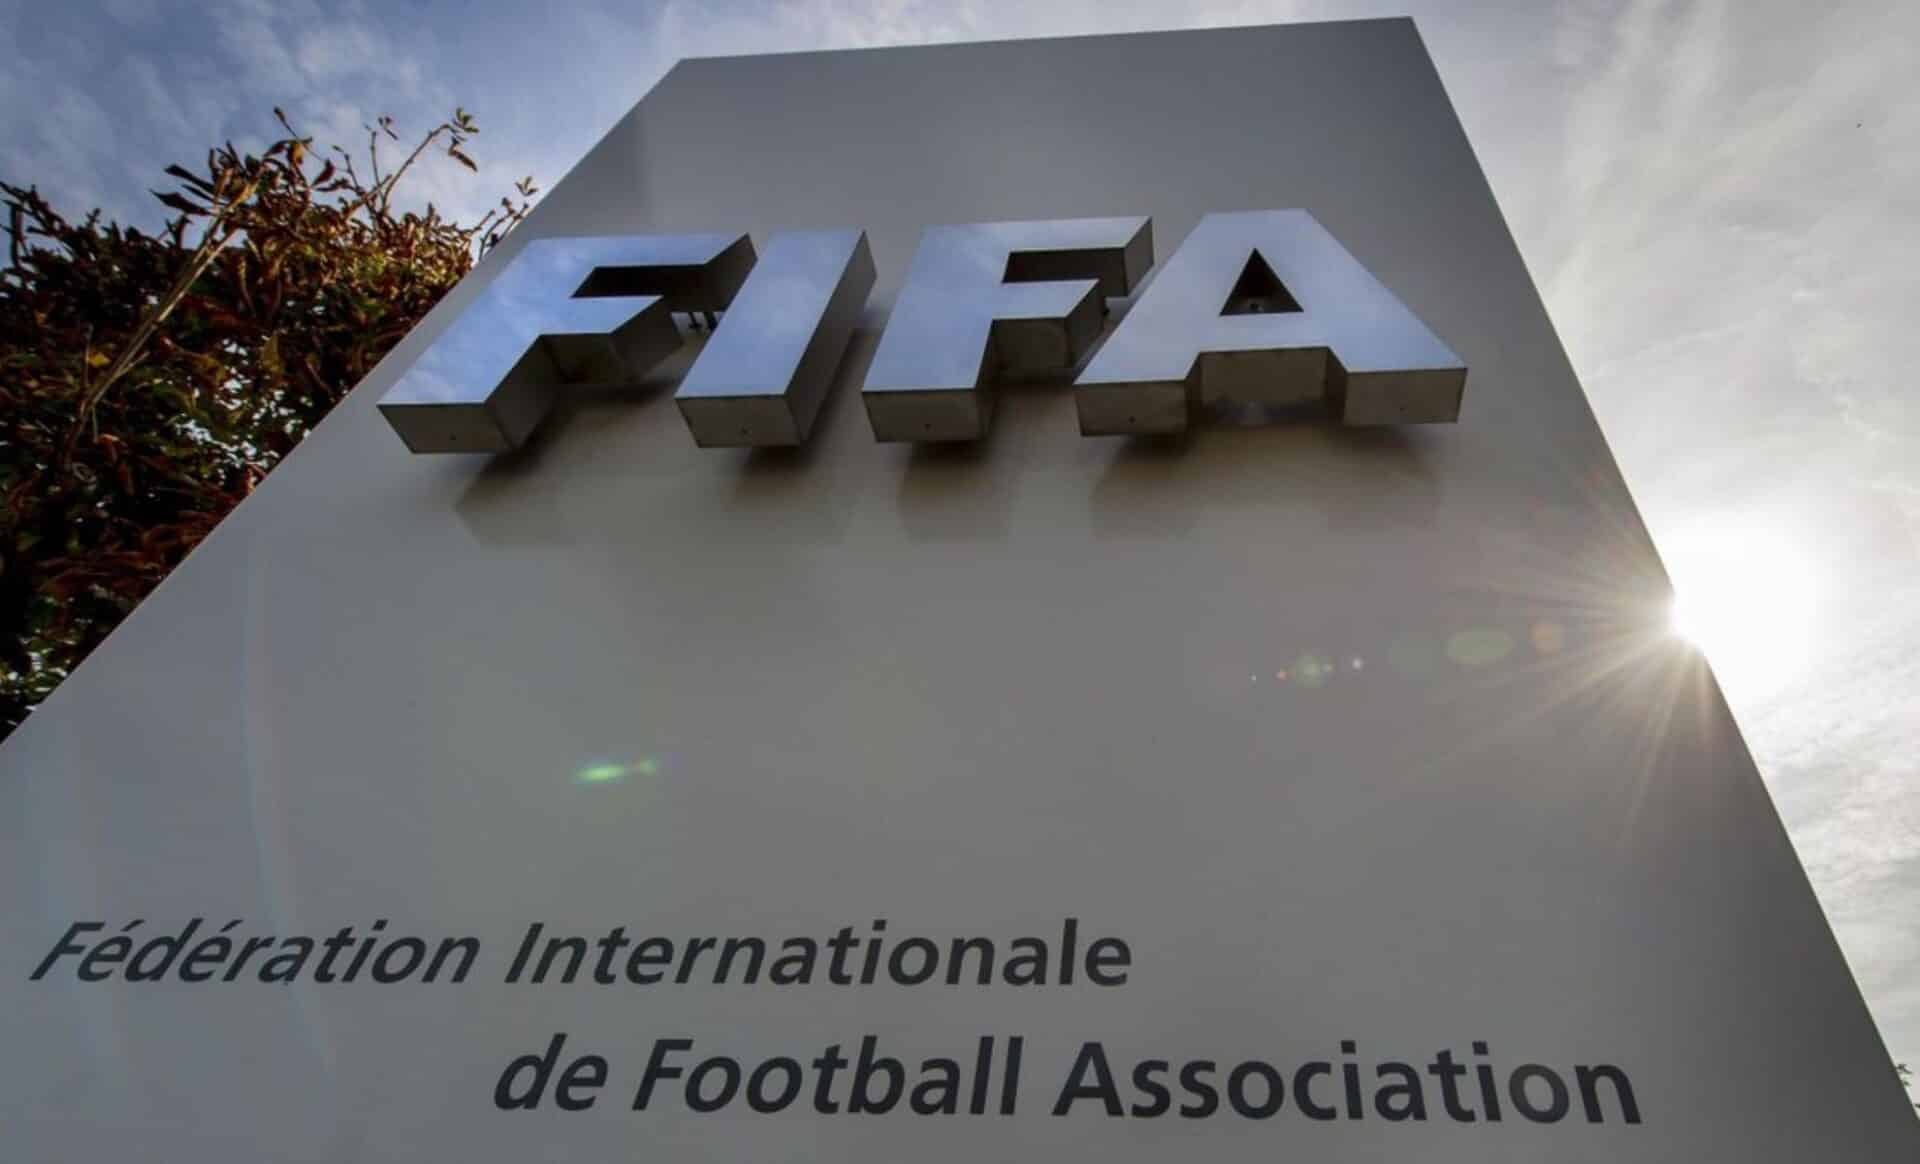 La France veut accueillir le siège de la FIFA